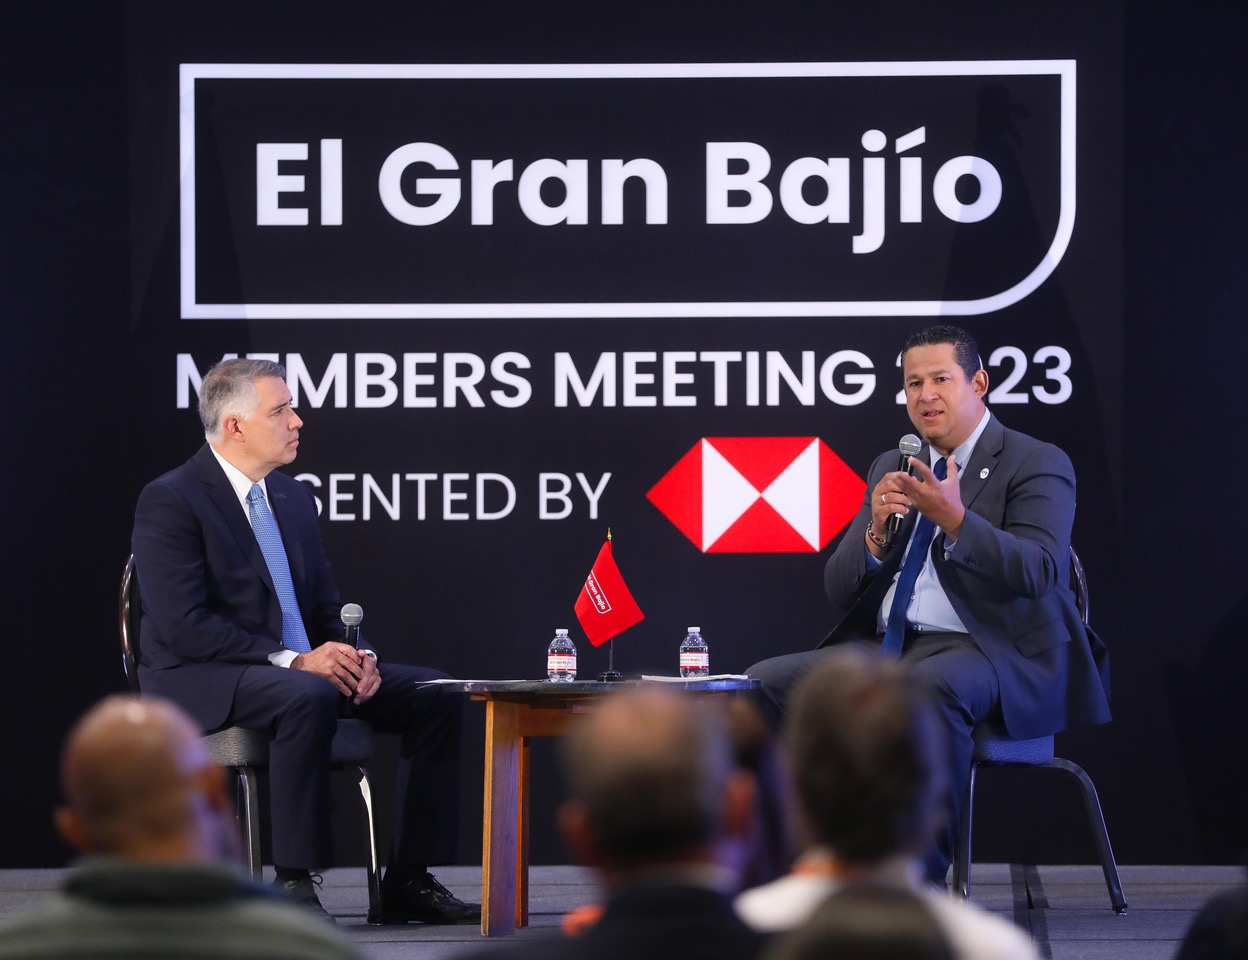 San Miguel de Allende es sede del evento empresarial ‘Gran Bajío Members Meeting 2023’